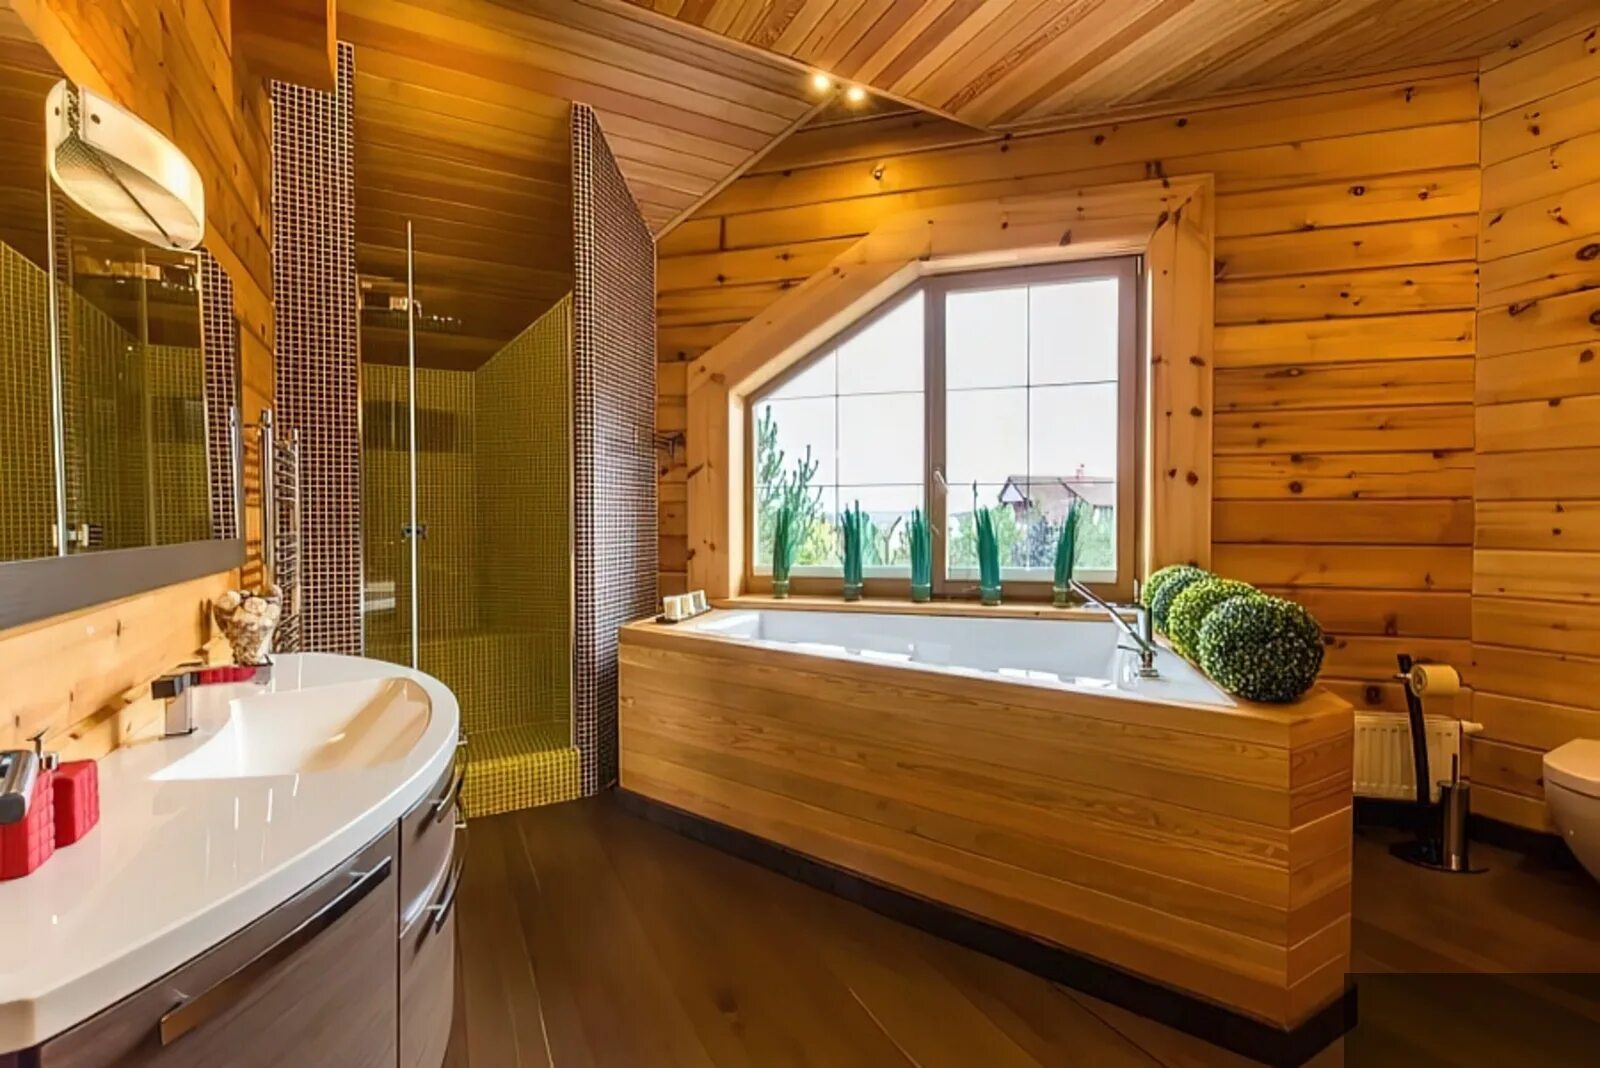 Дизайн комнат в деревянном доме. Ванная комната в деревянном доме. Ваееая в деревянном доме. Ванная отделанная деревом. Санузел в деревянном доме.